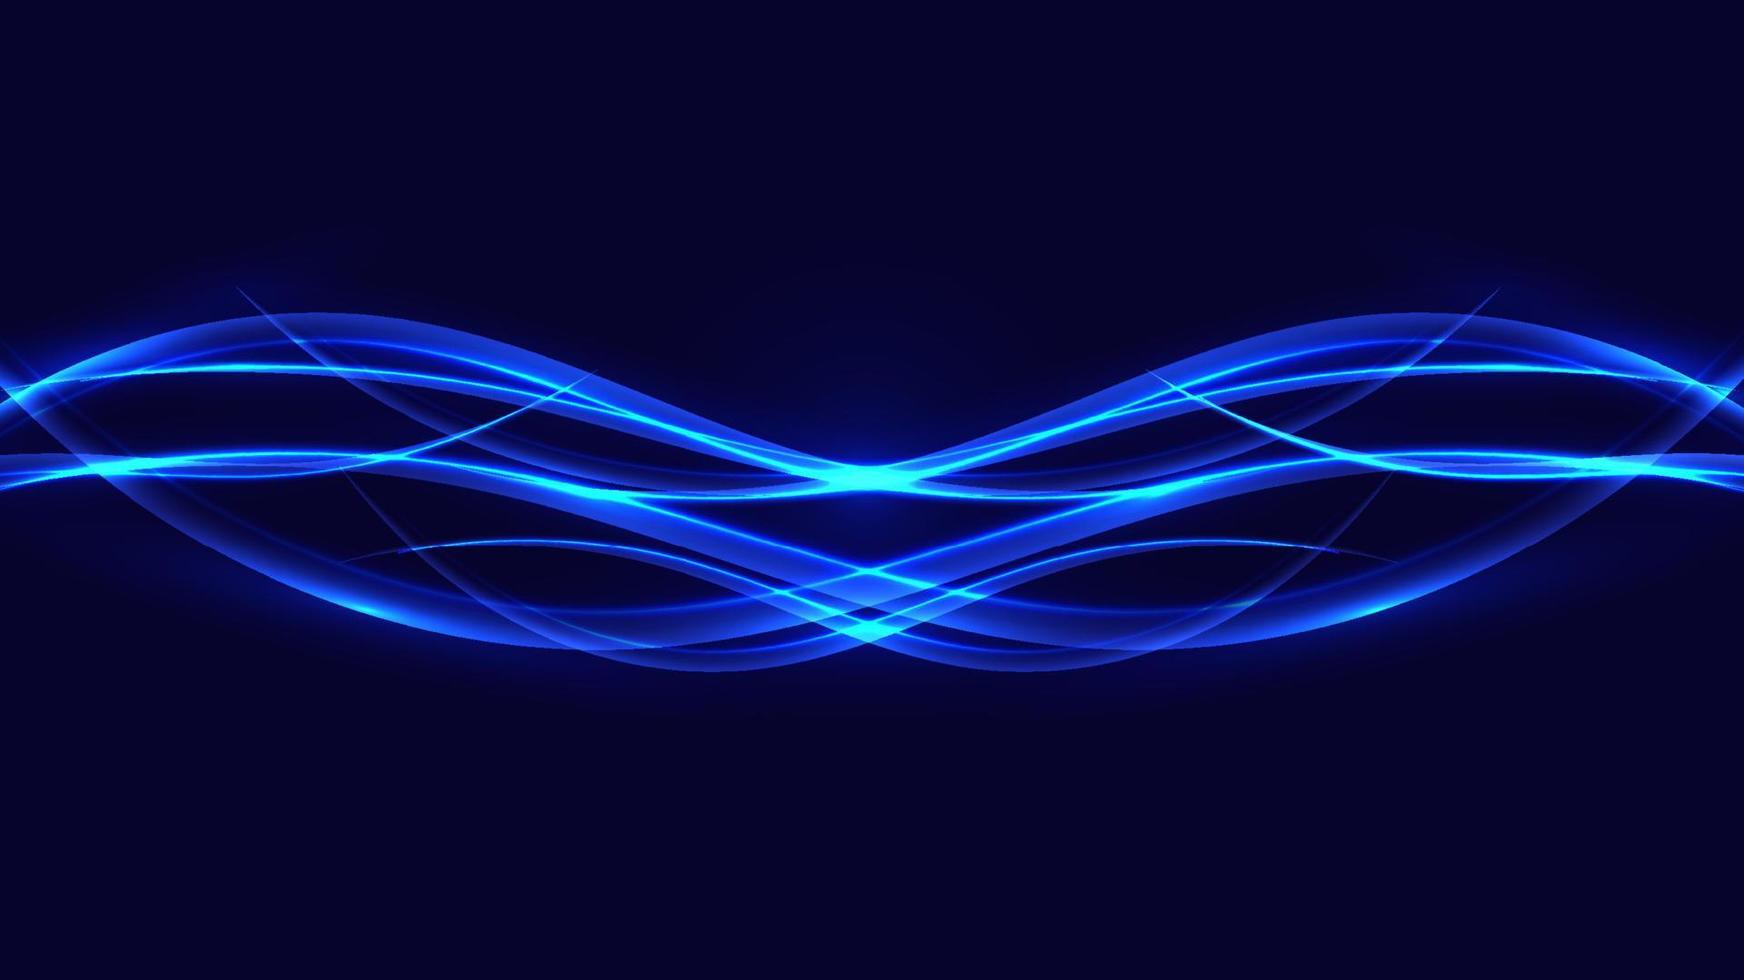 ondas brilhantes brilhantes de néon azul abstrato movendo linhas com elementos de design de efeito de iluminação em fundo escuro vetor